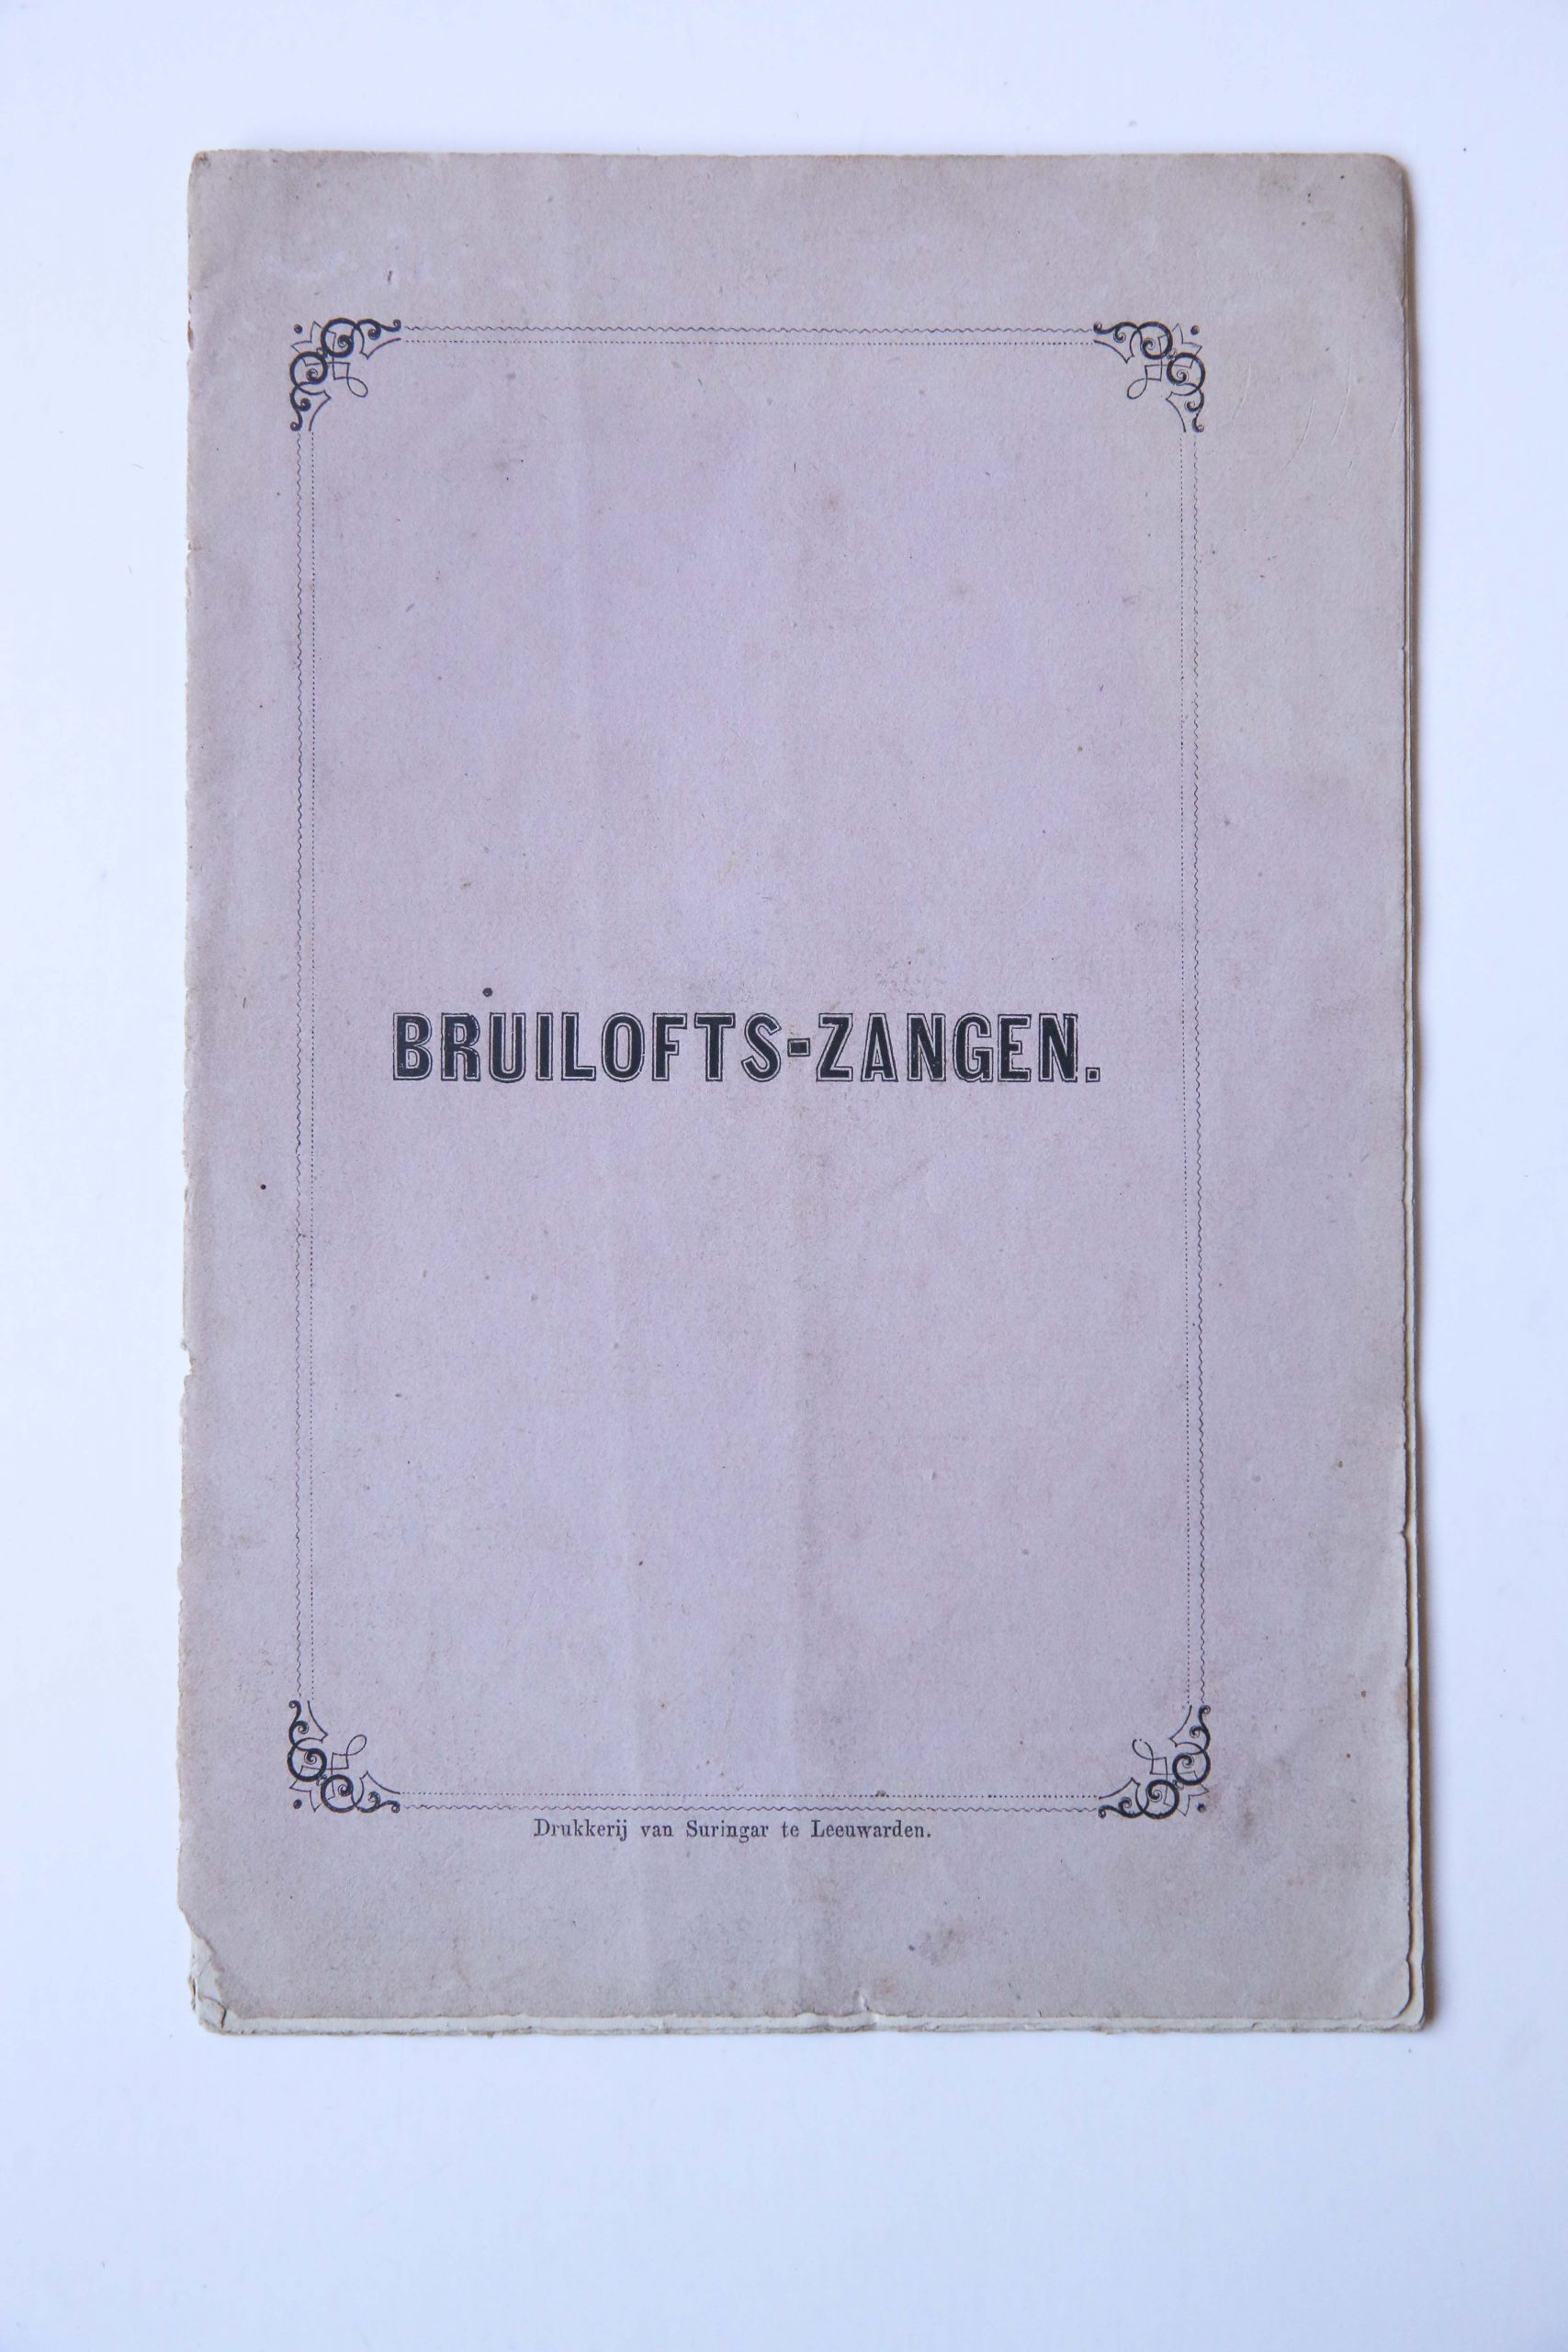 Bruiloftszangen. Drukkerij van Suringar te Leeuwarden, 16 p. Bruiloftszangen 8º, origineel papieren omslag.